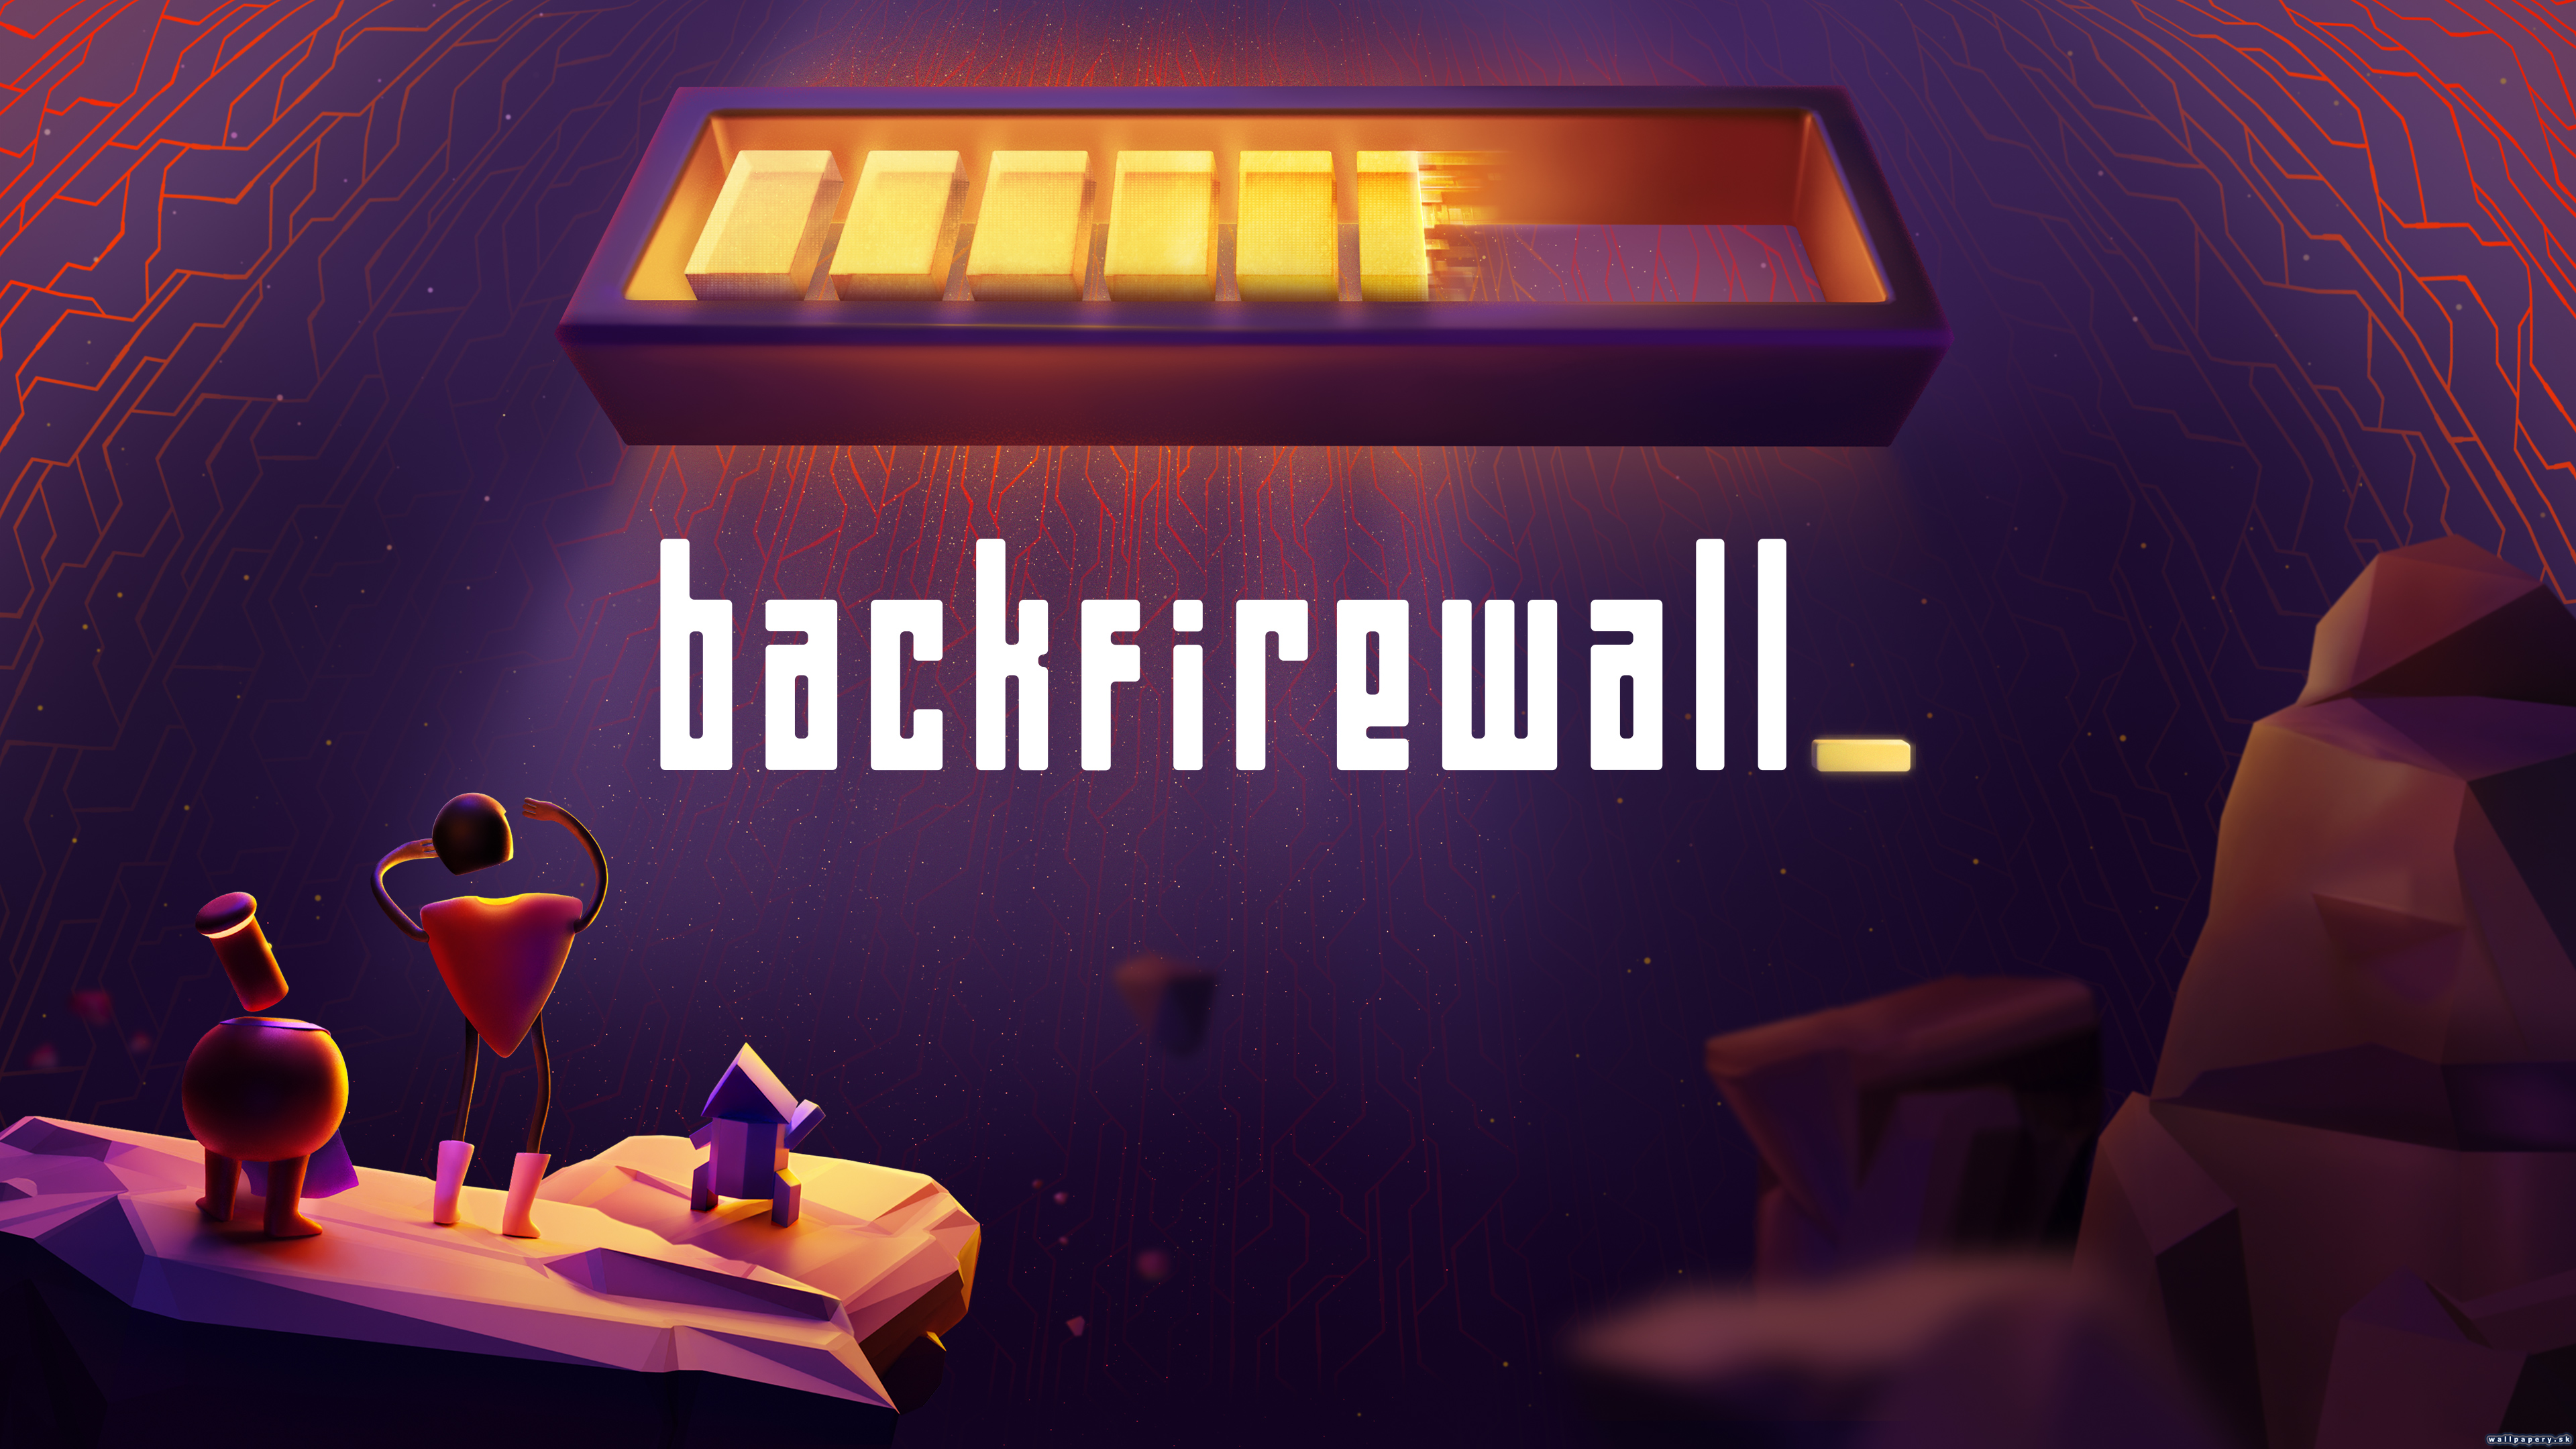 Backfirewall_ - wallpaper 1